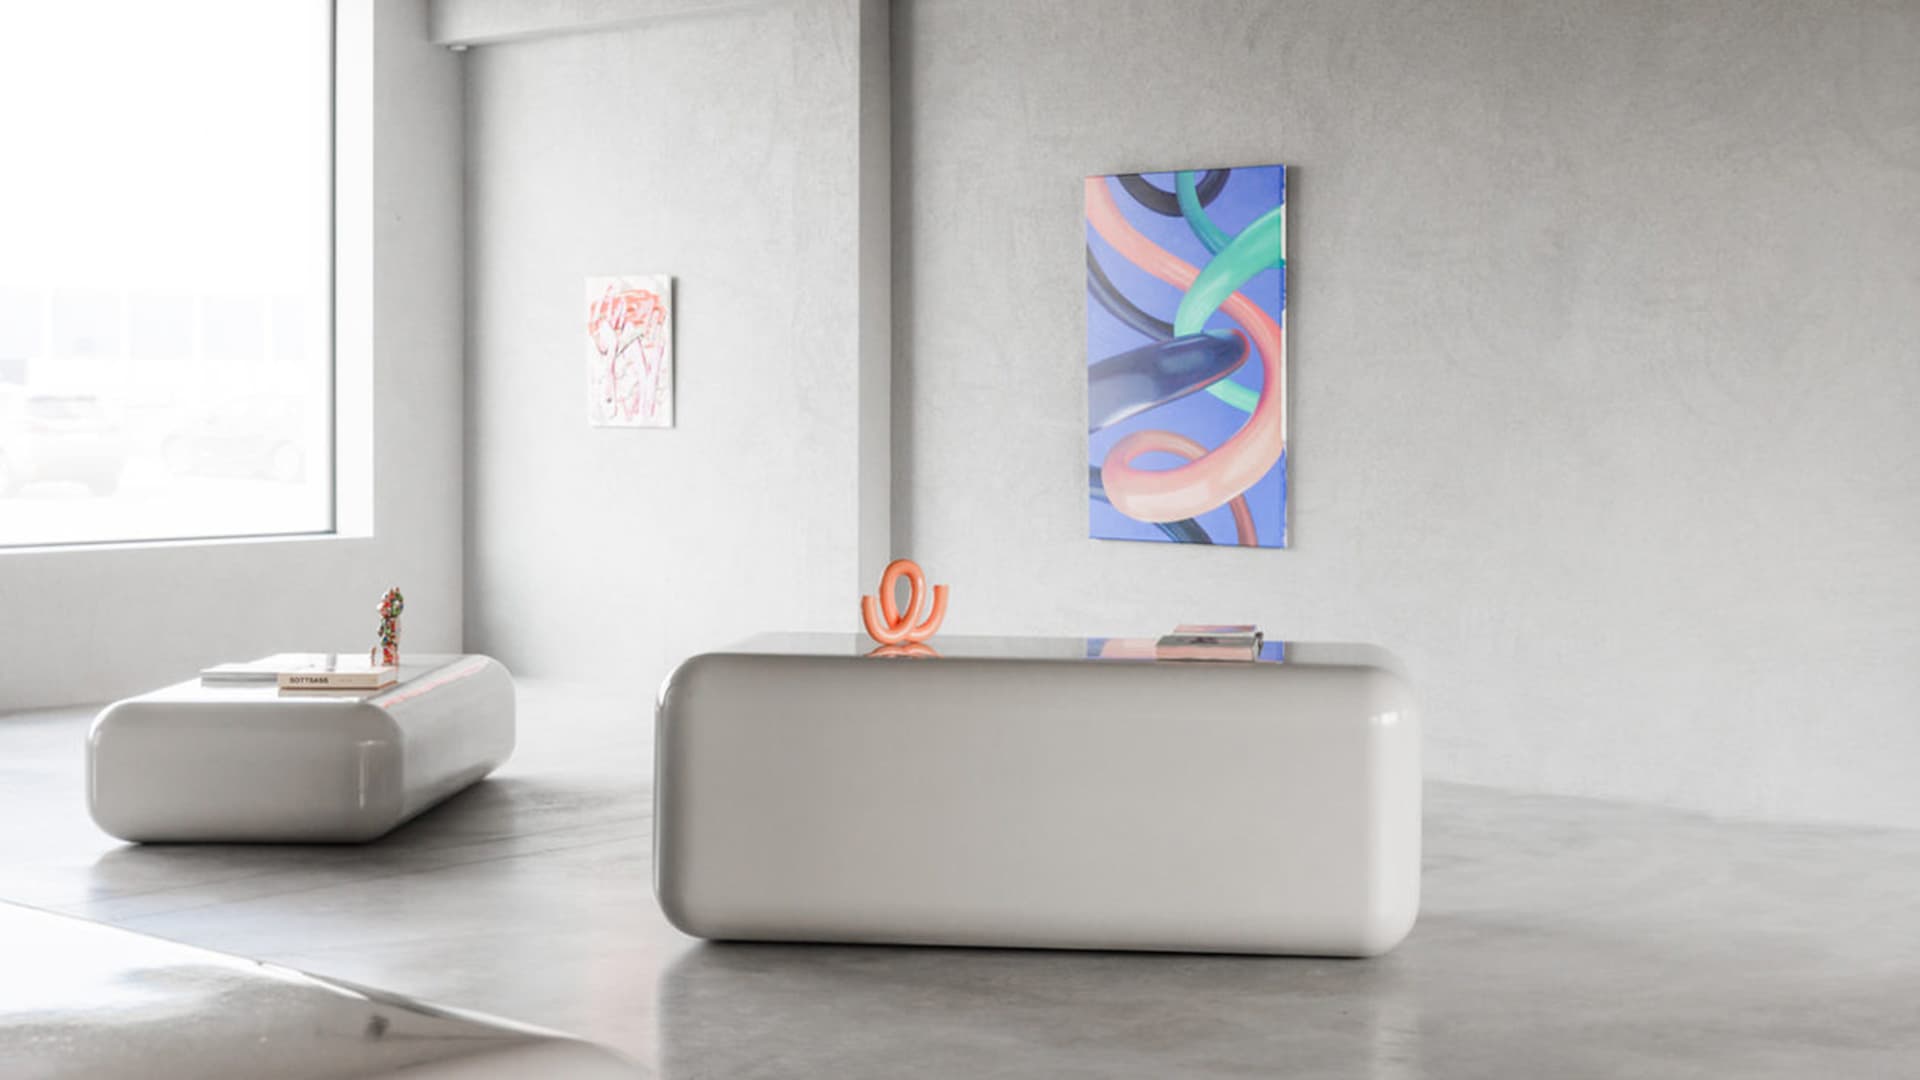 Бетон, сталь и яркая мебель в интерьере галереи современного искусства – проект 5AM Studio